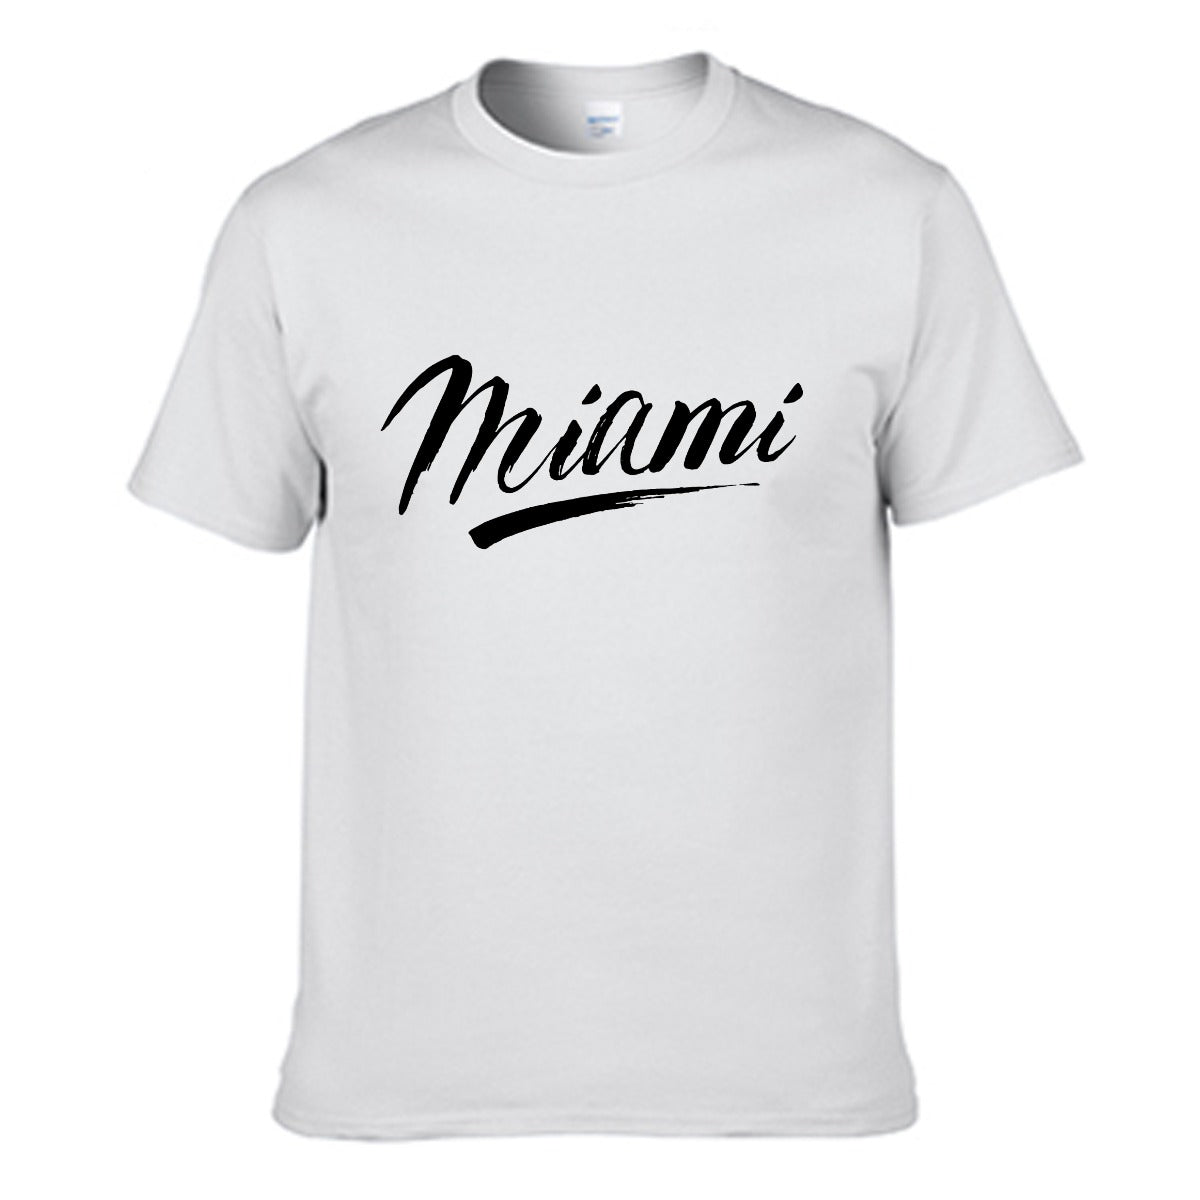 Miami Men's T-shirt (100% Cotton) - T0359